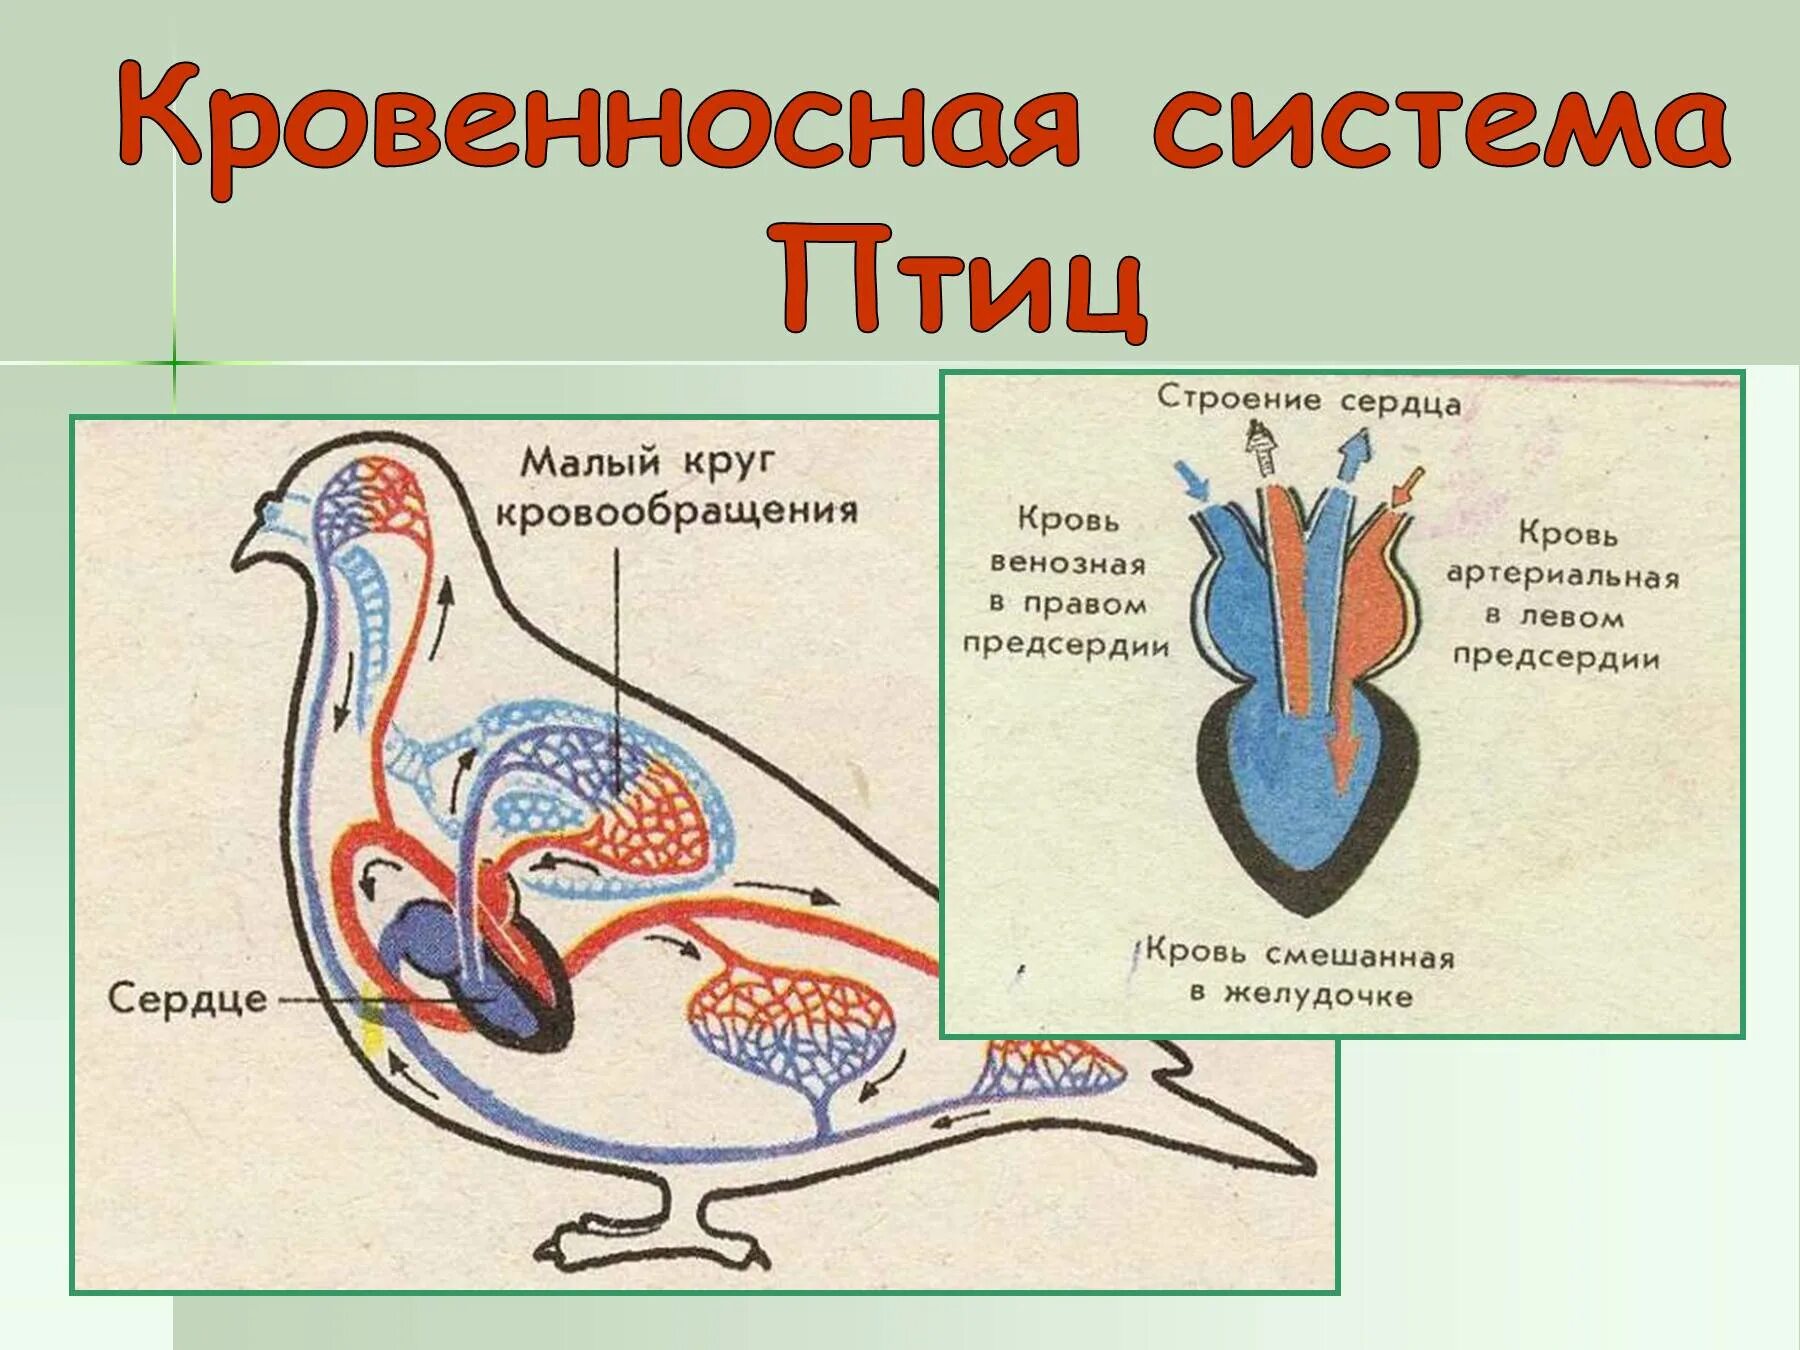 Система кровообращения птиц. Кровеносная система птиц схема. Строение сердца птиц. Строение кровеносной системы птиц.